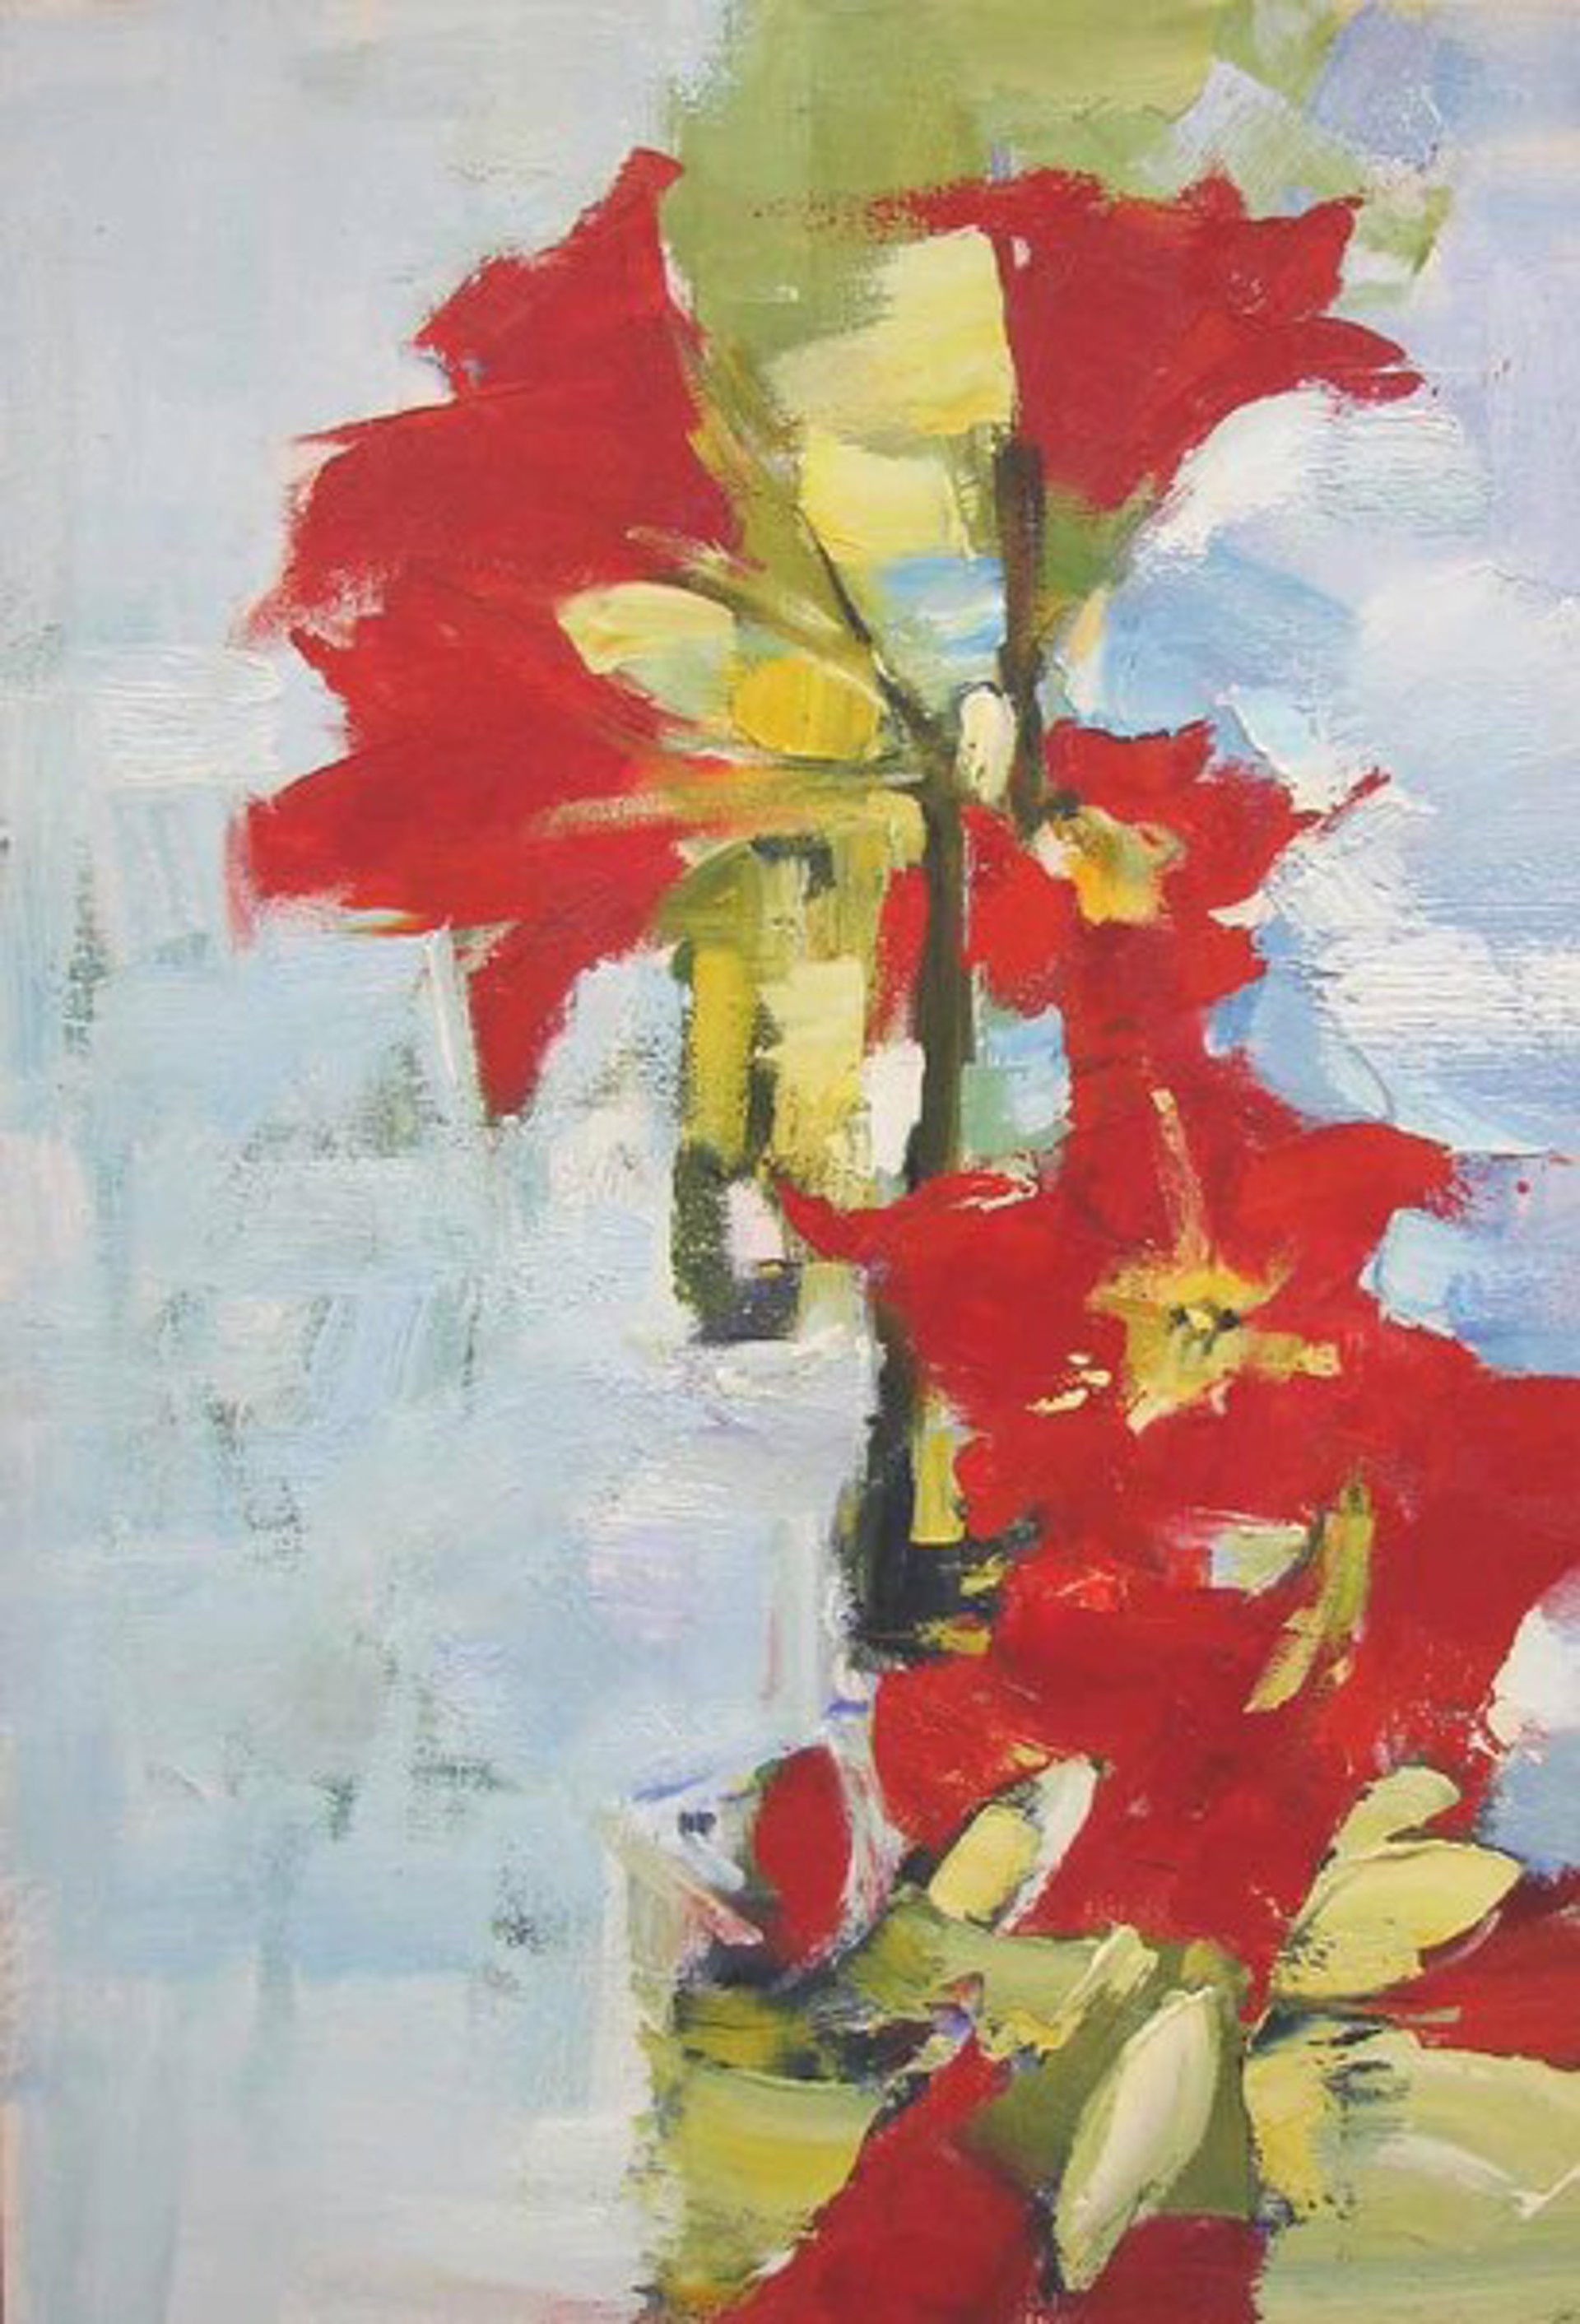 Red Flowers by Yana Golubyatnikova